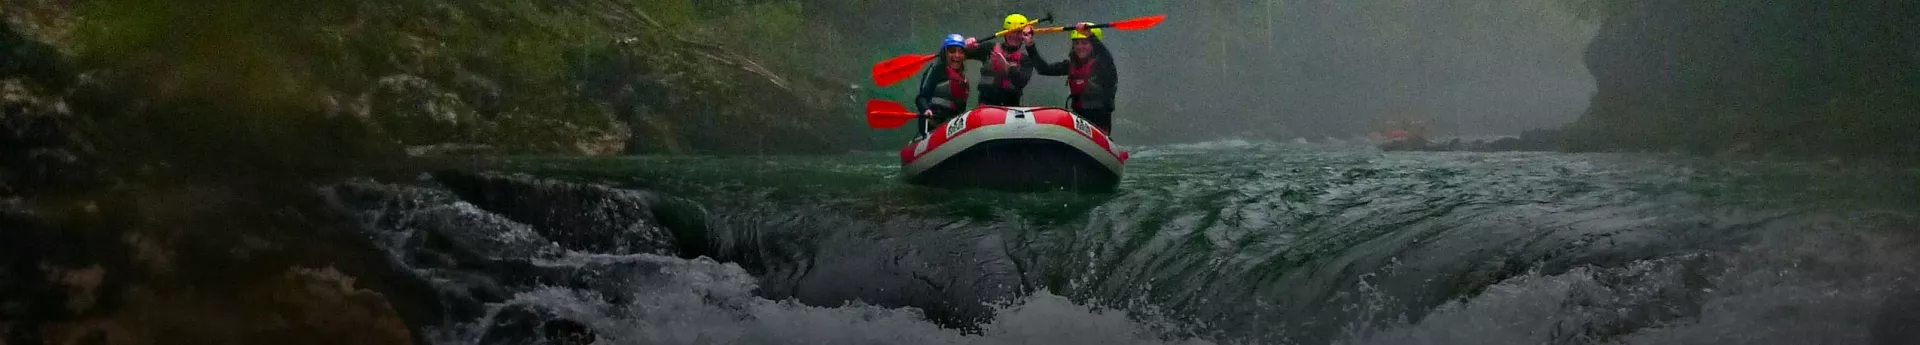 Découvrez en rafting, au fil de l’eau, la vallée des Gaves entre Argelès Gazost, Lourdes et Pau.